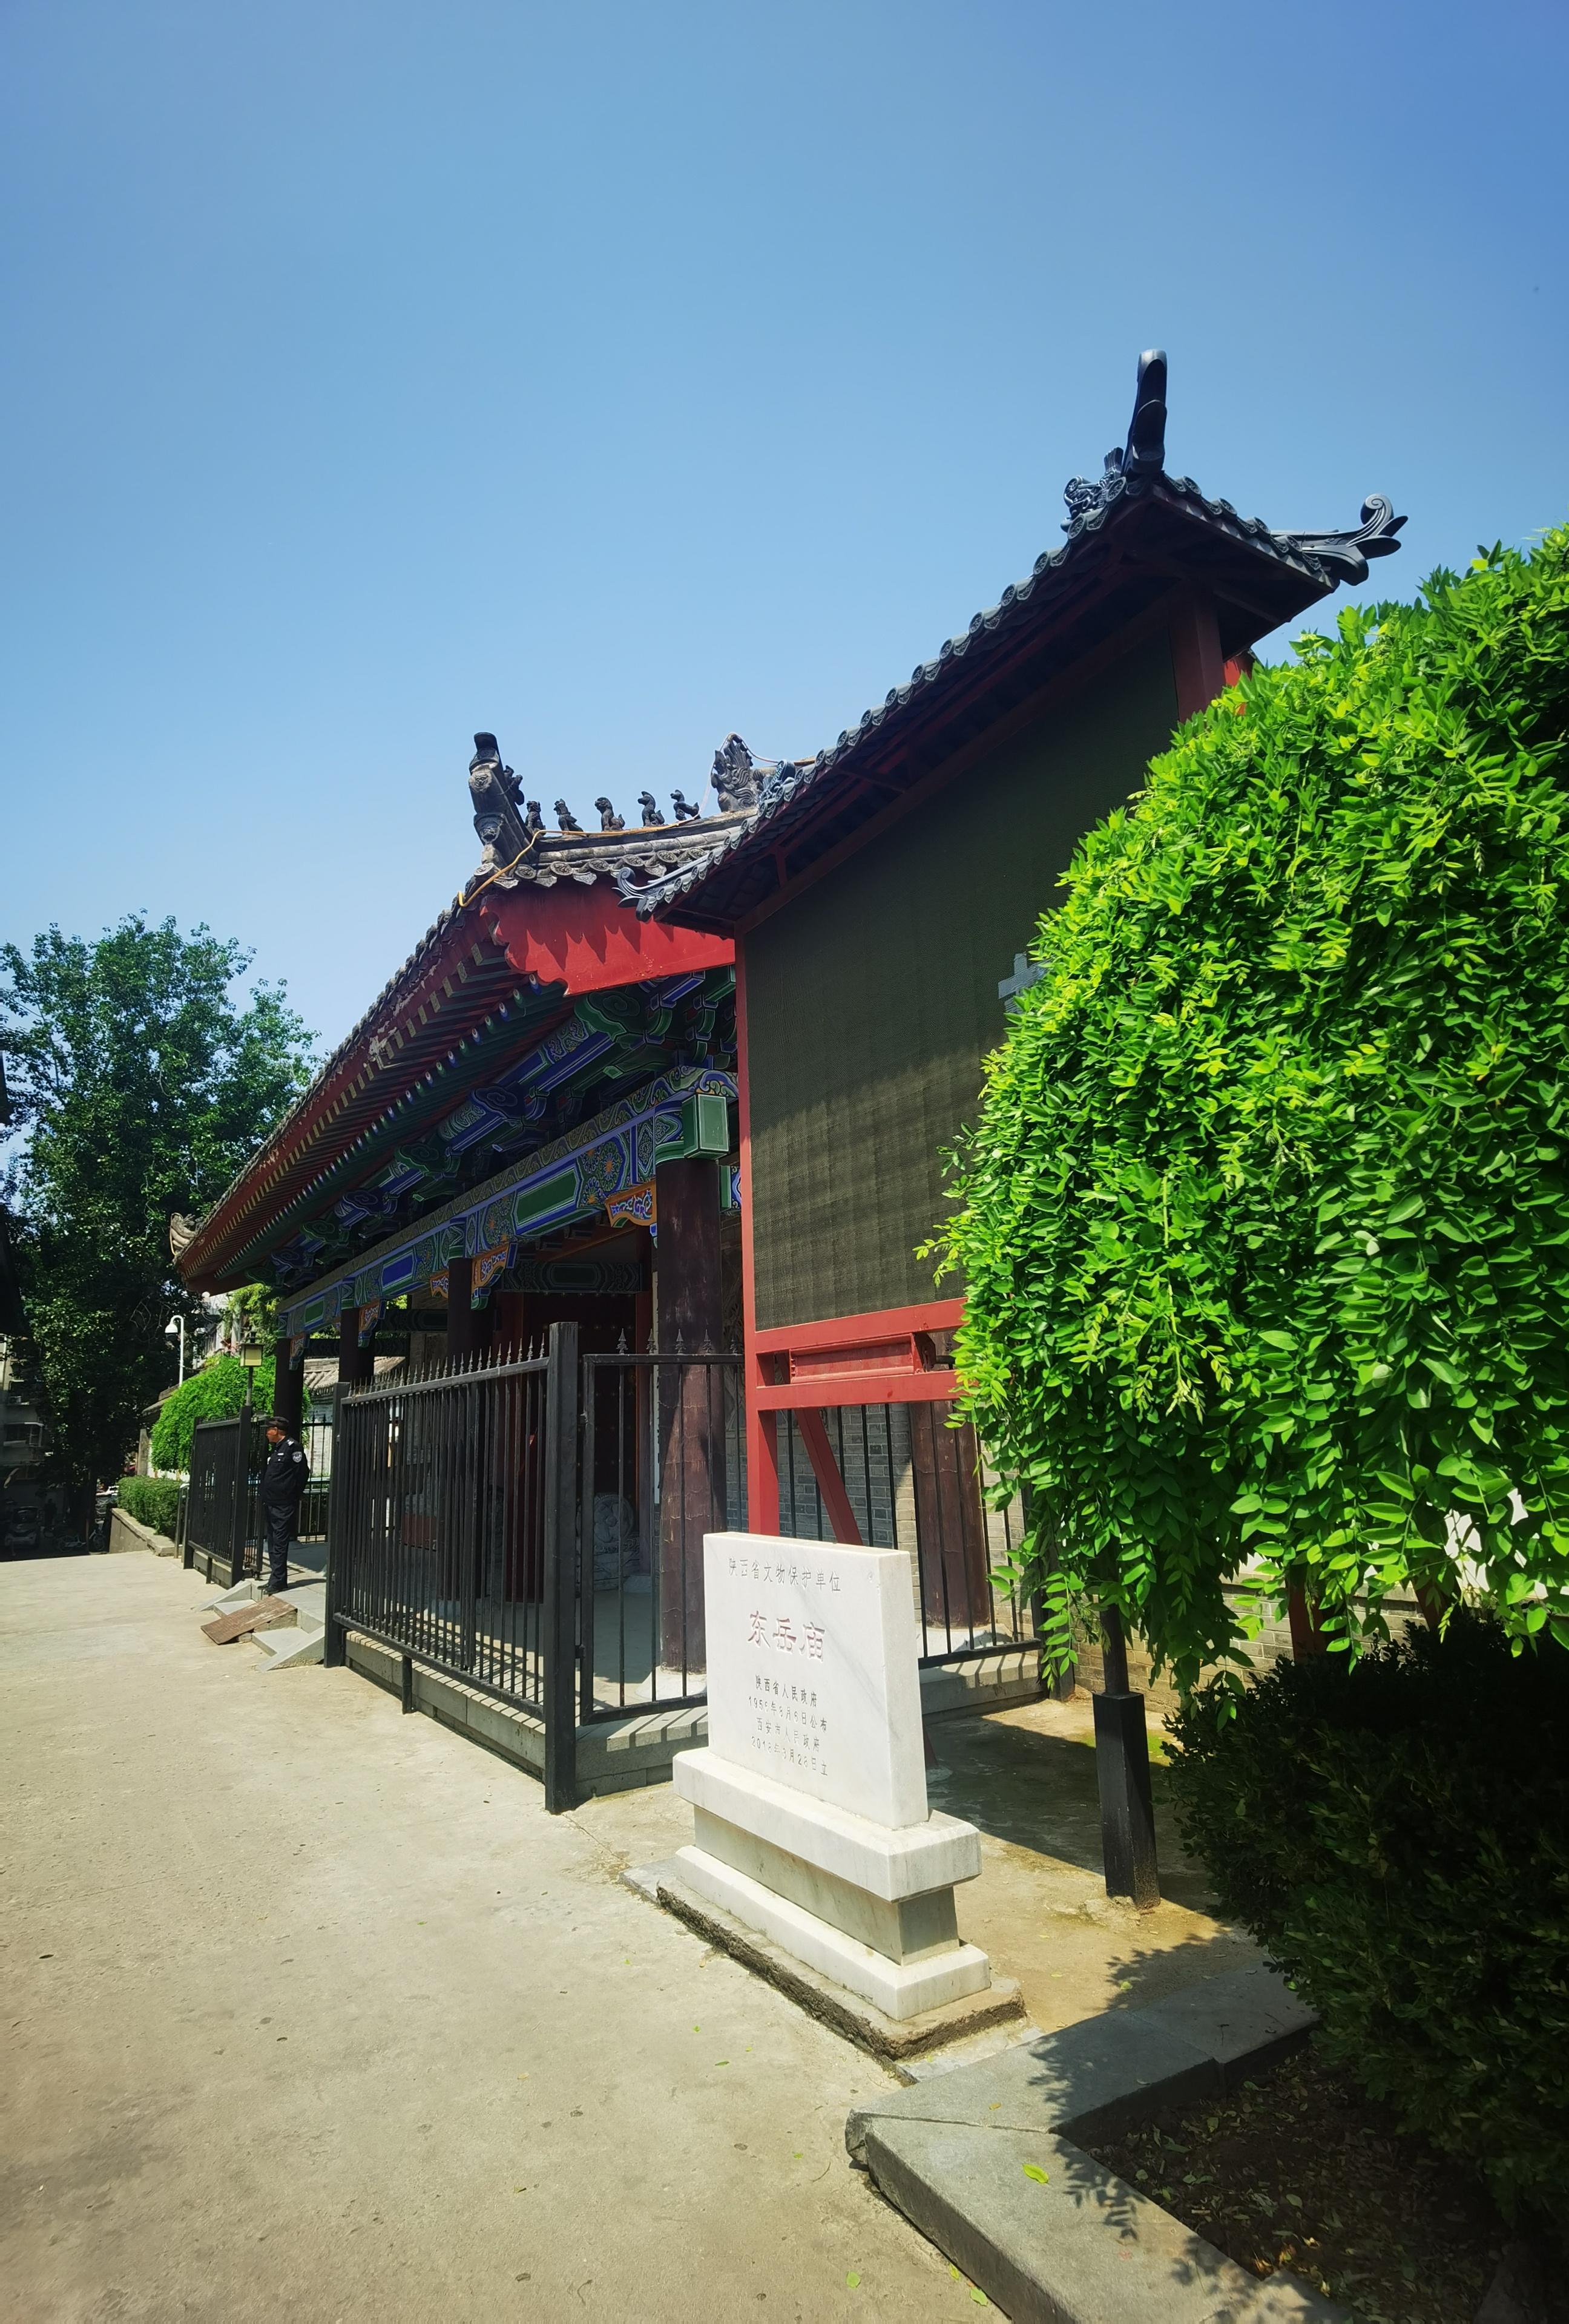 西安市民俗博物馆位于新城区昌仁里3号于2018年10月10日对外开放博物